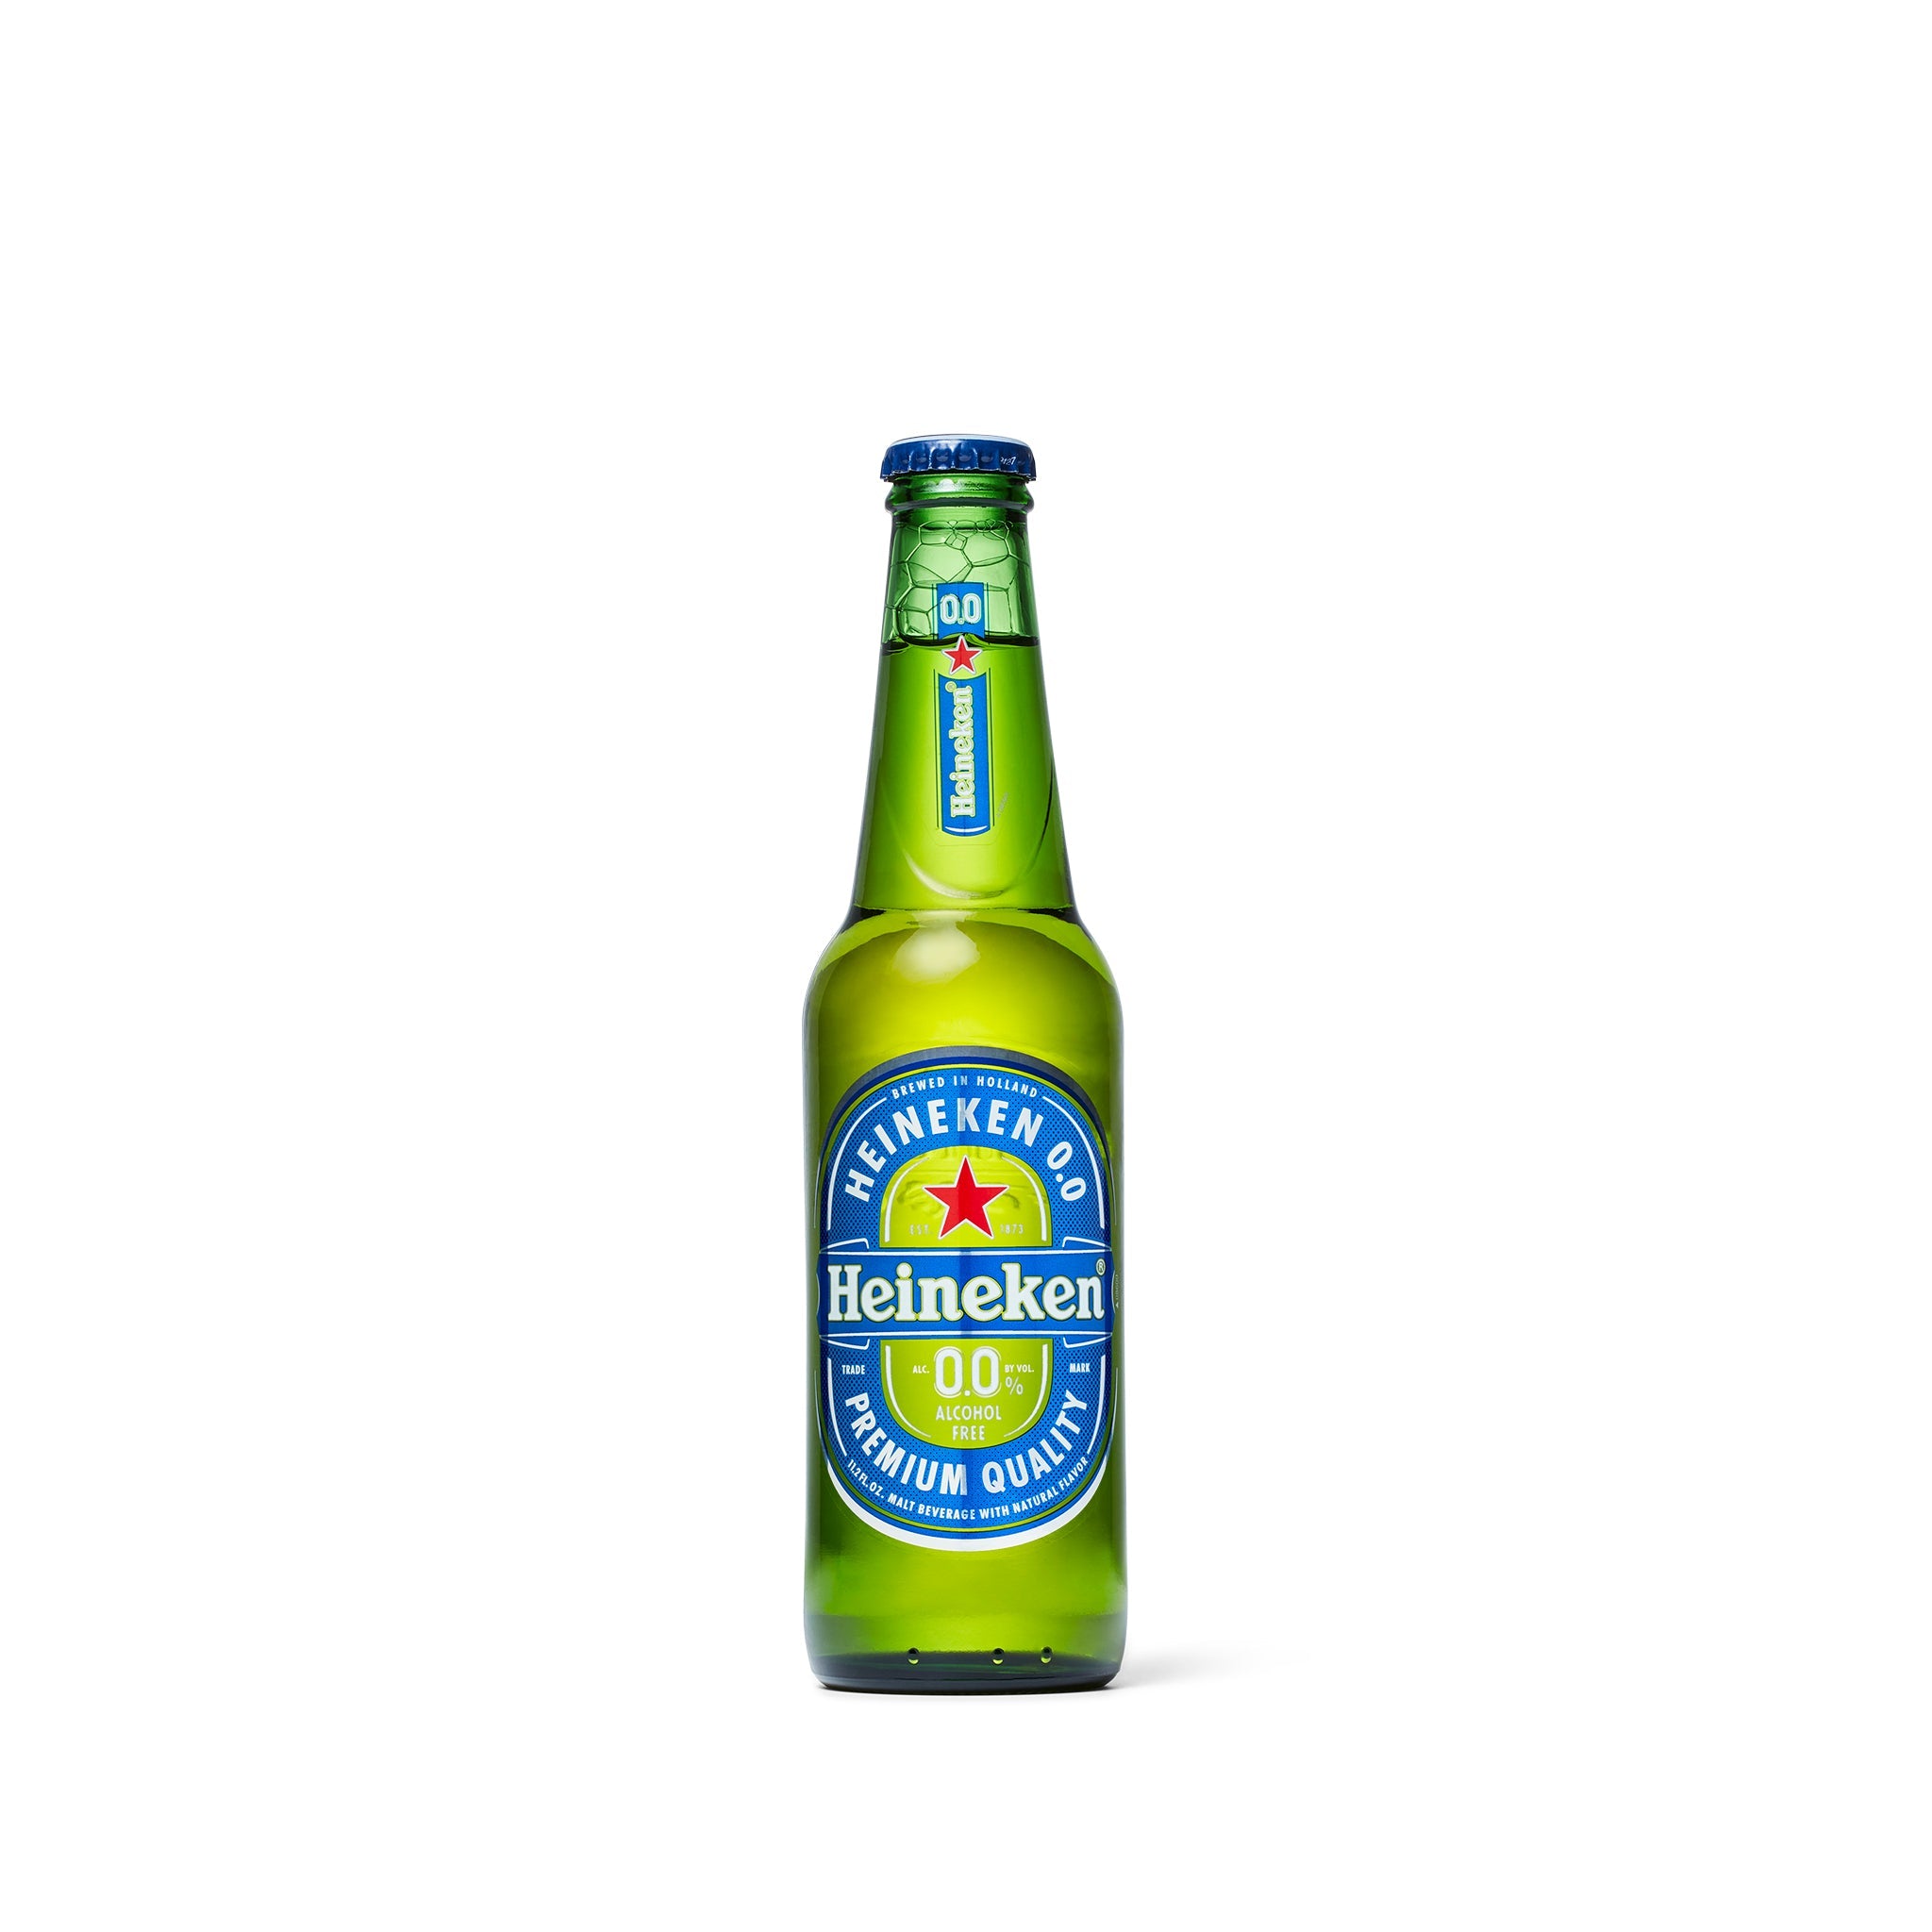 Heineken 0.0 - Non-Alcoholic Premium Lager - 6-pack – Boisson